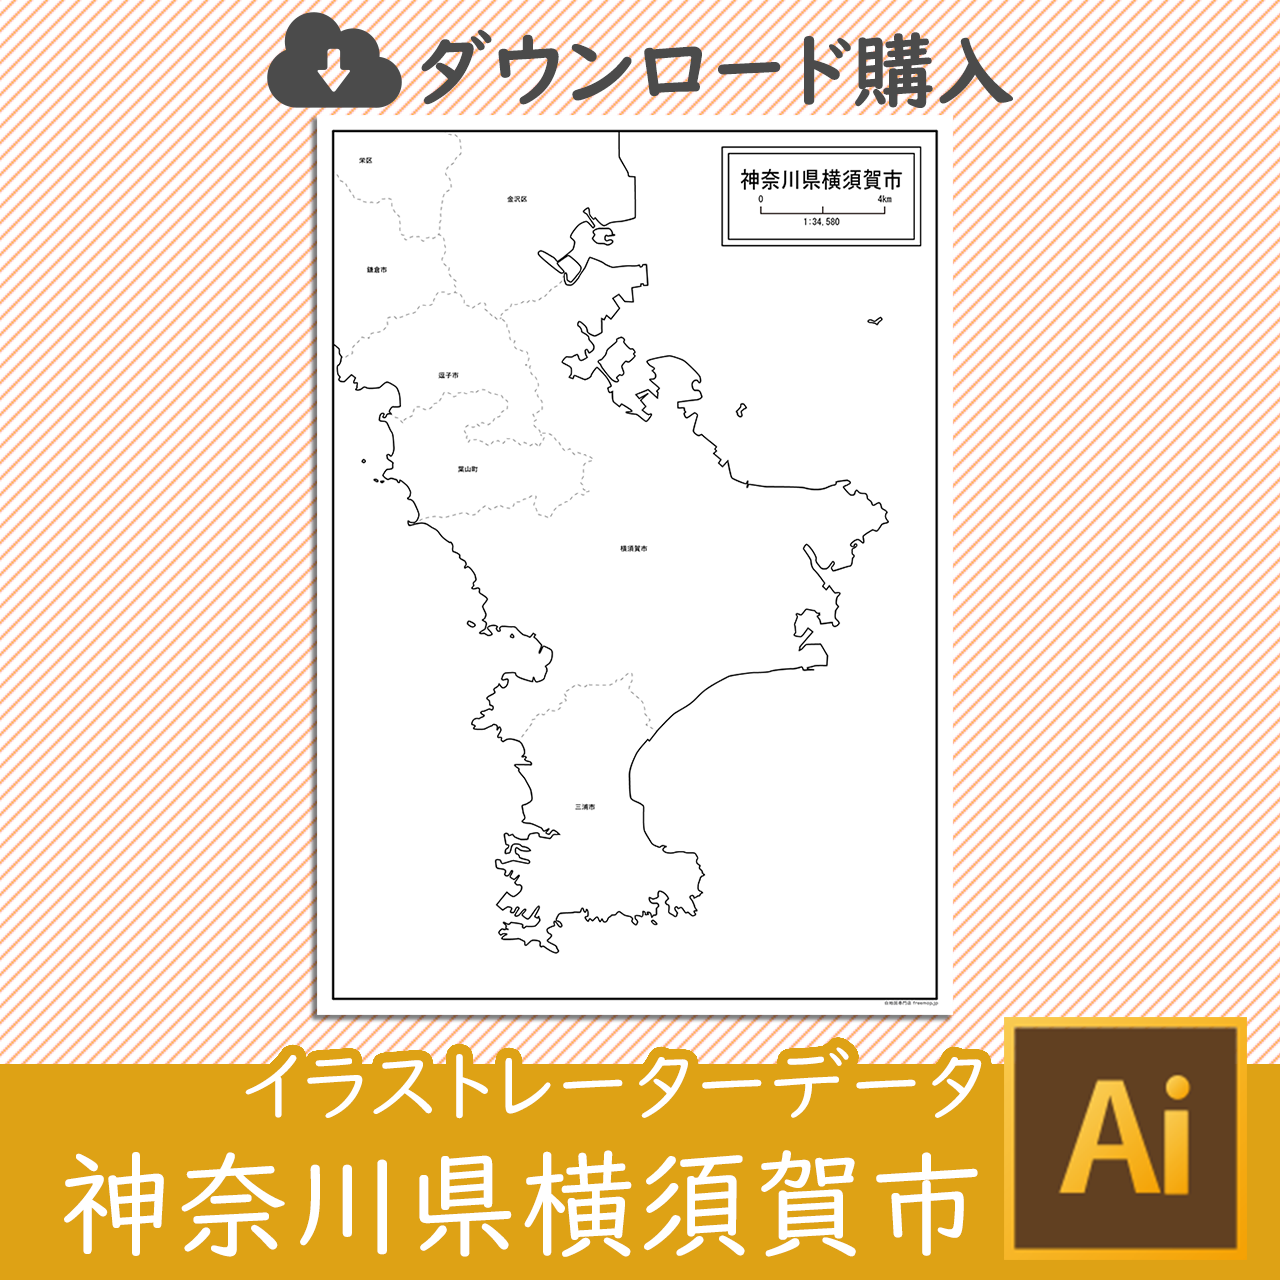 横須賀市のaiデータのサムネイル画像